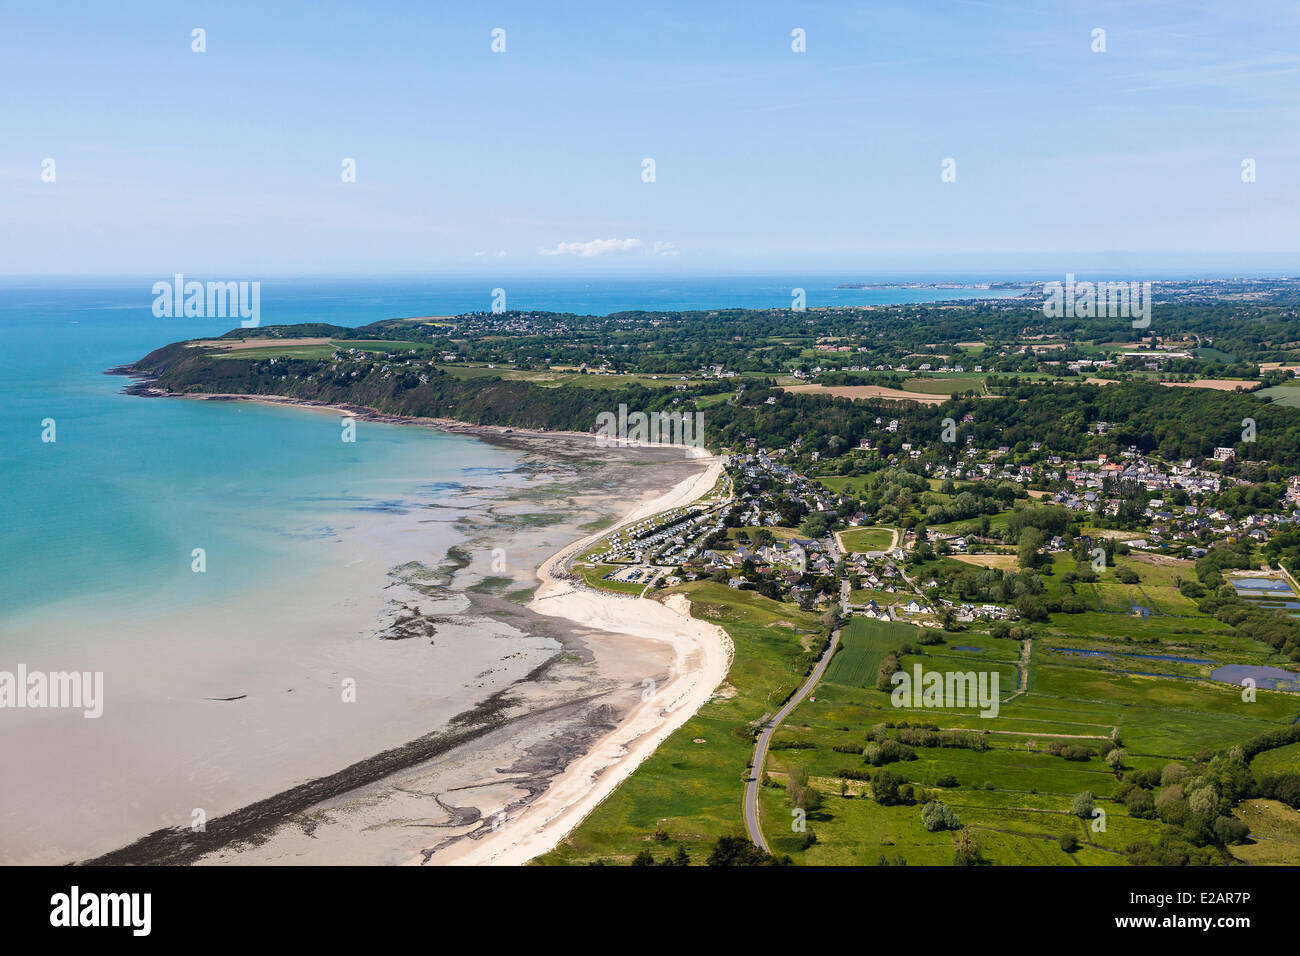 France, Manche, Saint Jean le Thomas (vue aérienne Photo Stock - Alamy